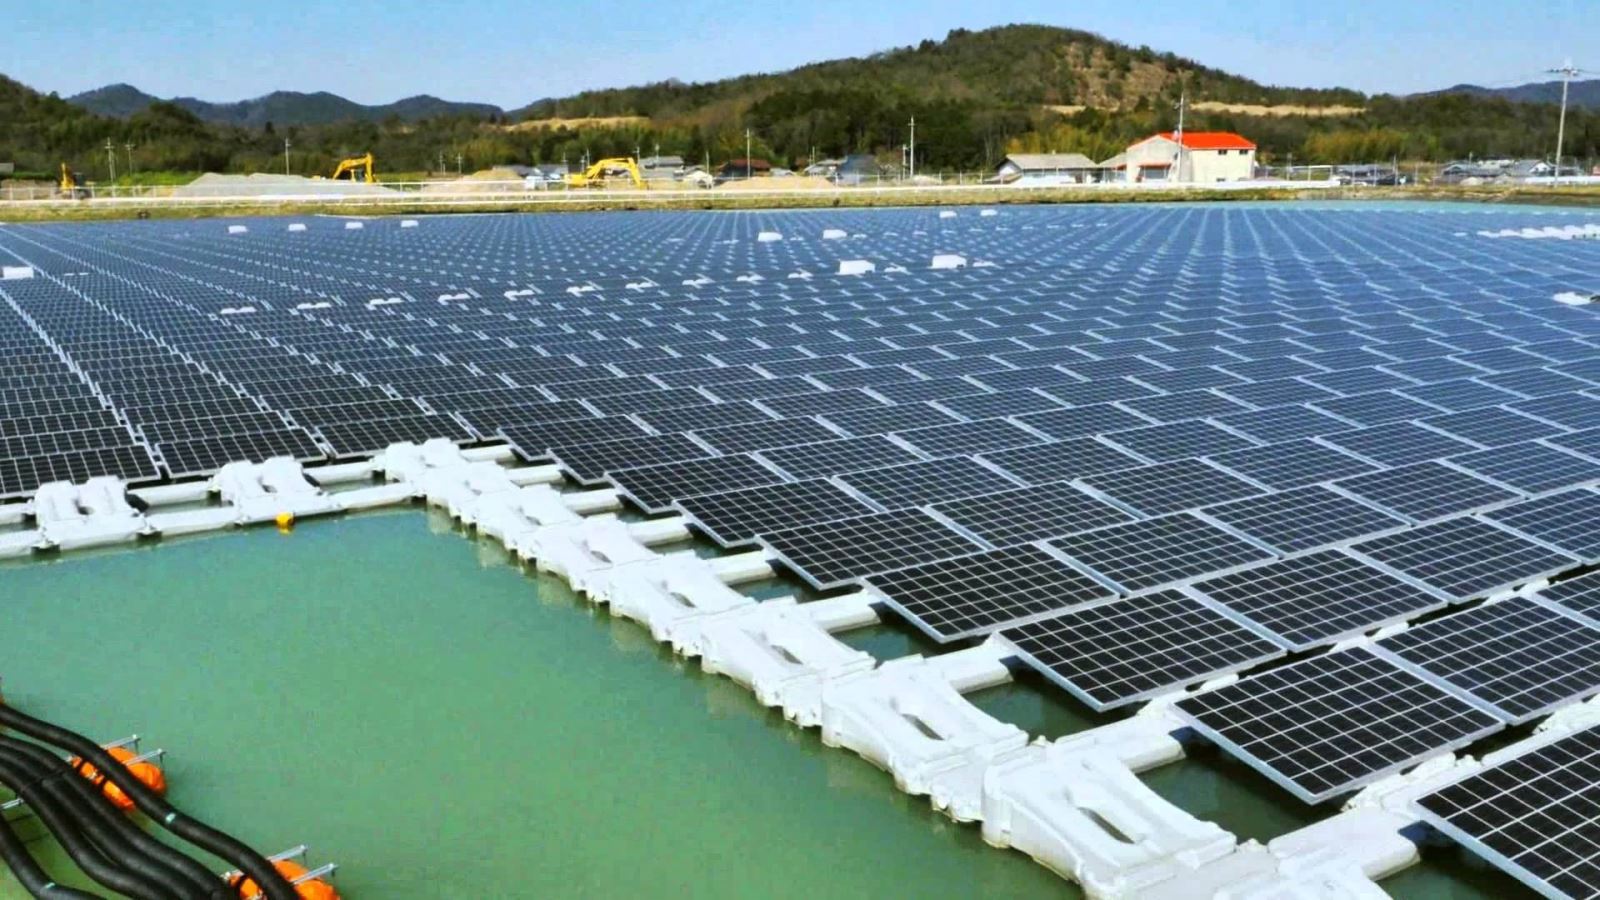 O projeto de construção das usinas flutuantes de energia solar prevê a instalação de uma estrutura em cada estado. Empresas de Minas Gerais e Pernambuco se unem para consórcio de desenvolvimento do empreendimento de produção energética.